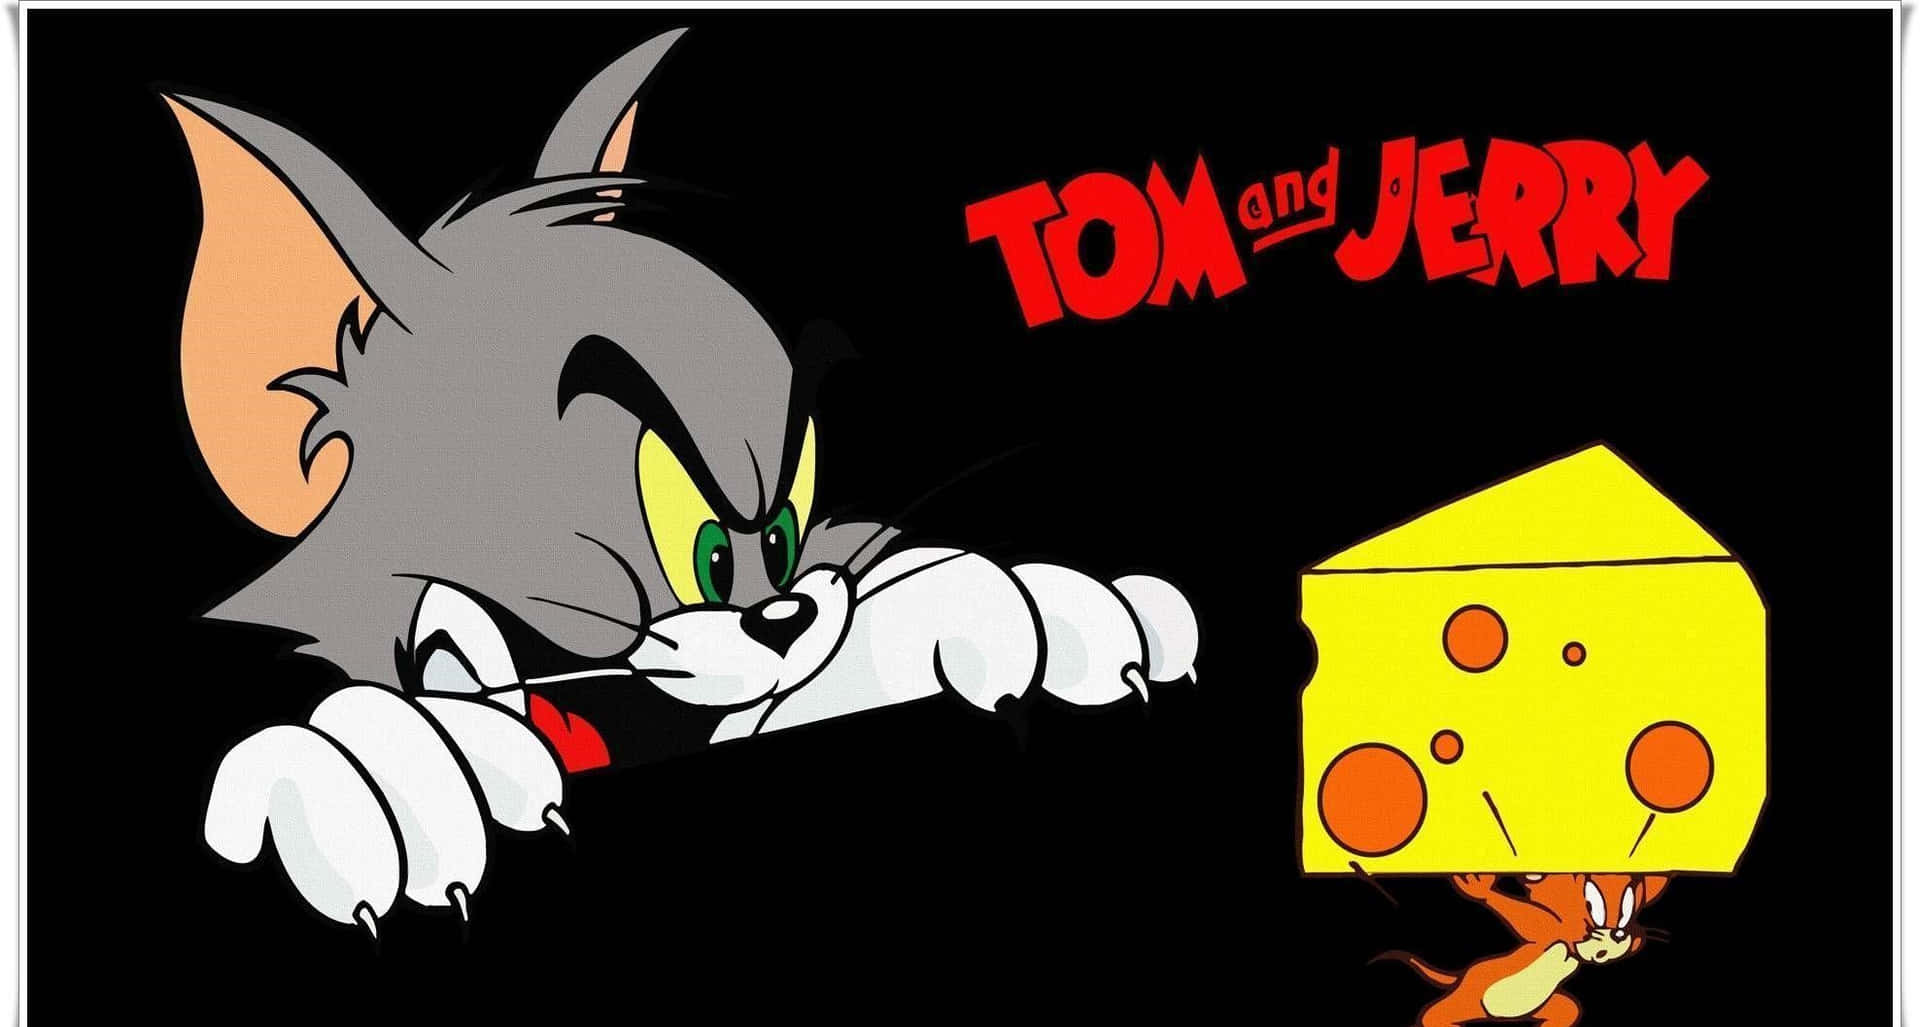 Tomund Jerry Teilen Sich In Dieser Witzigen Szene Einen Lacher. Wallpaper